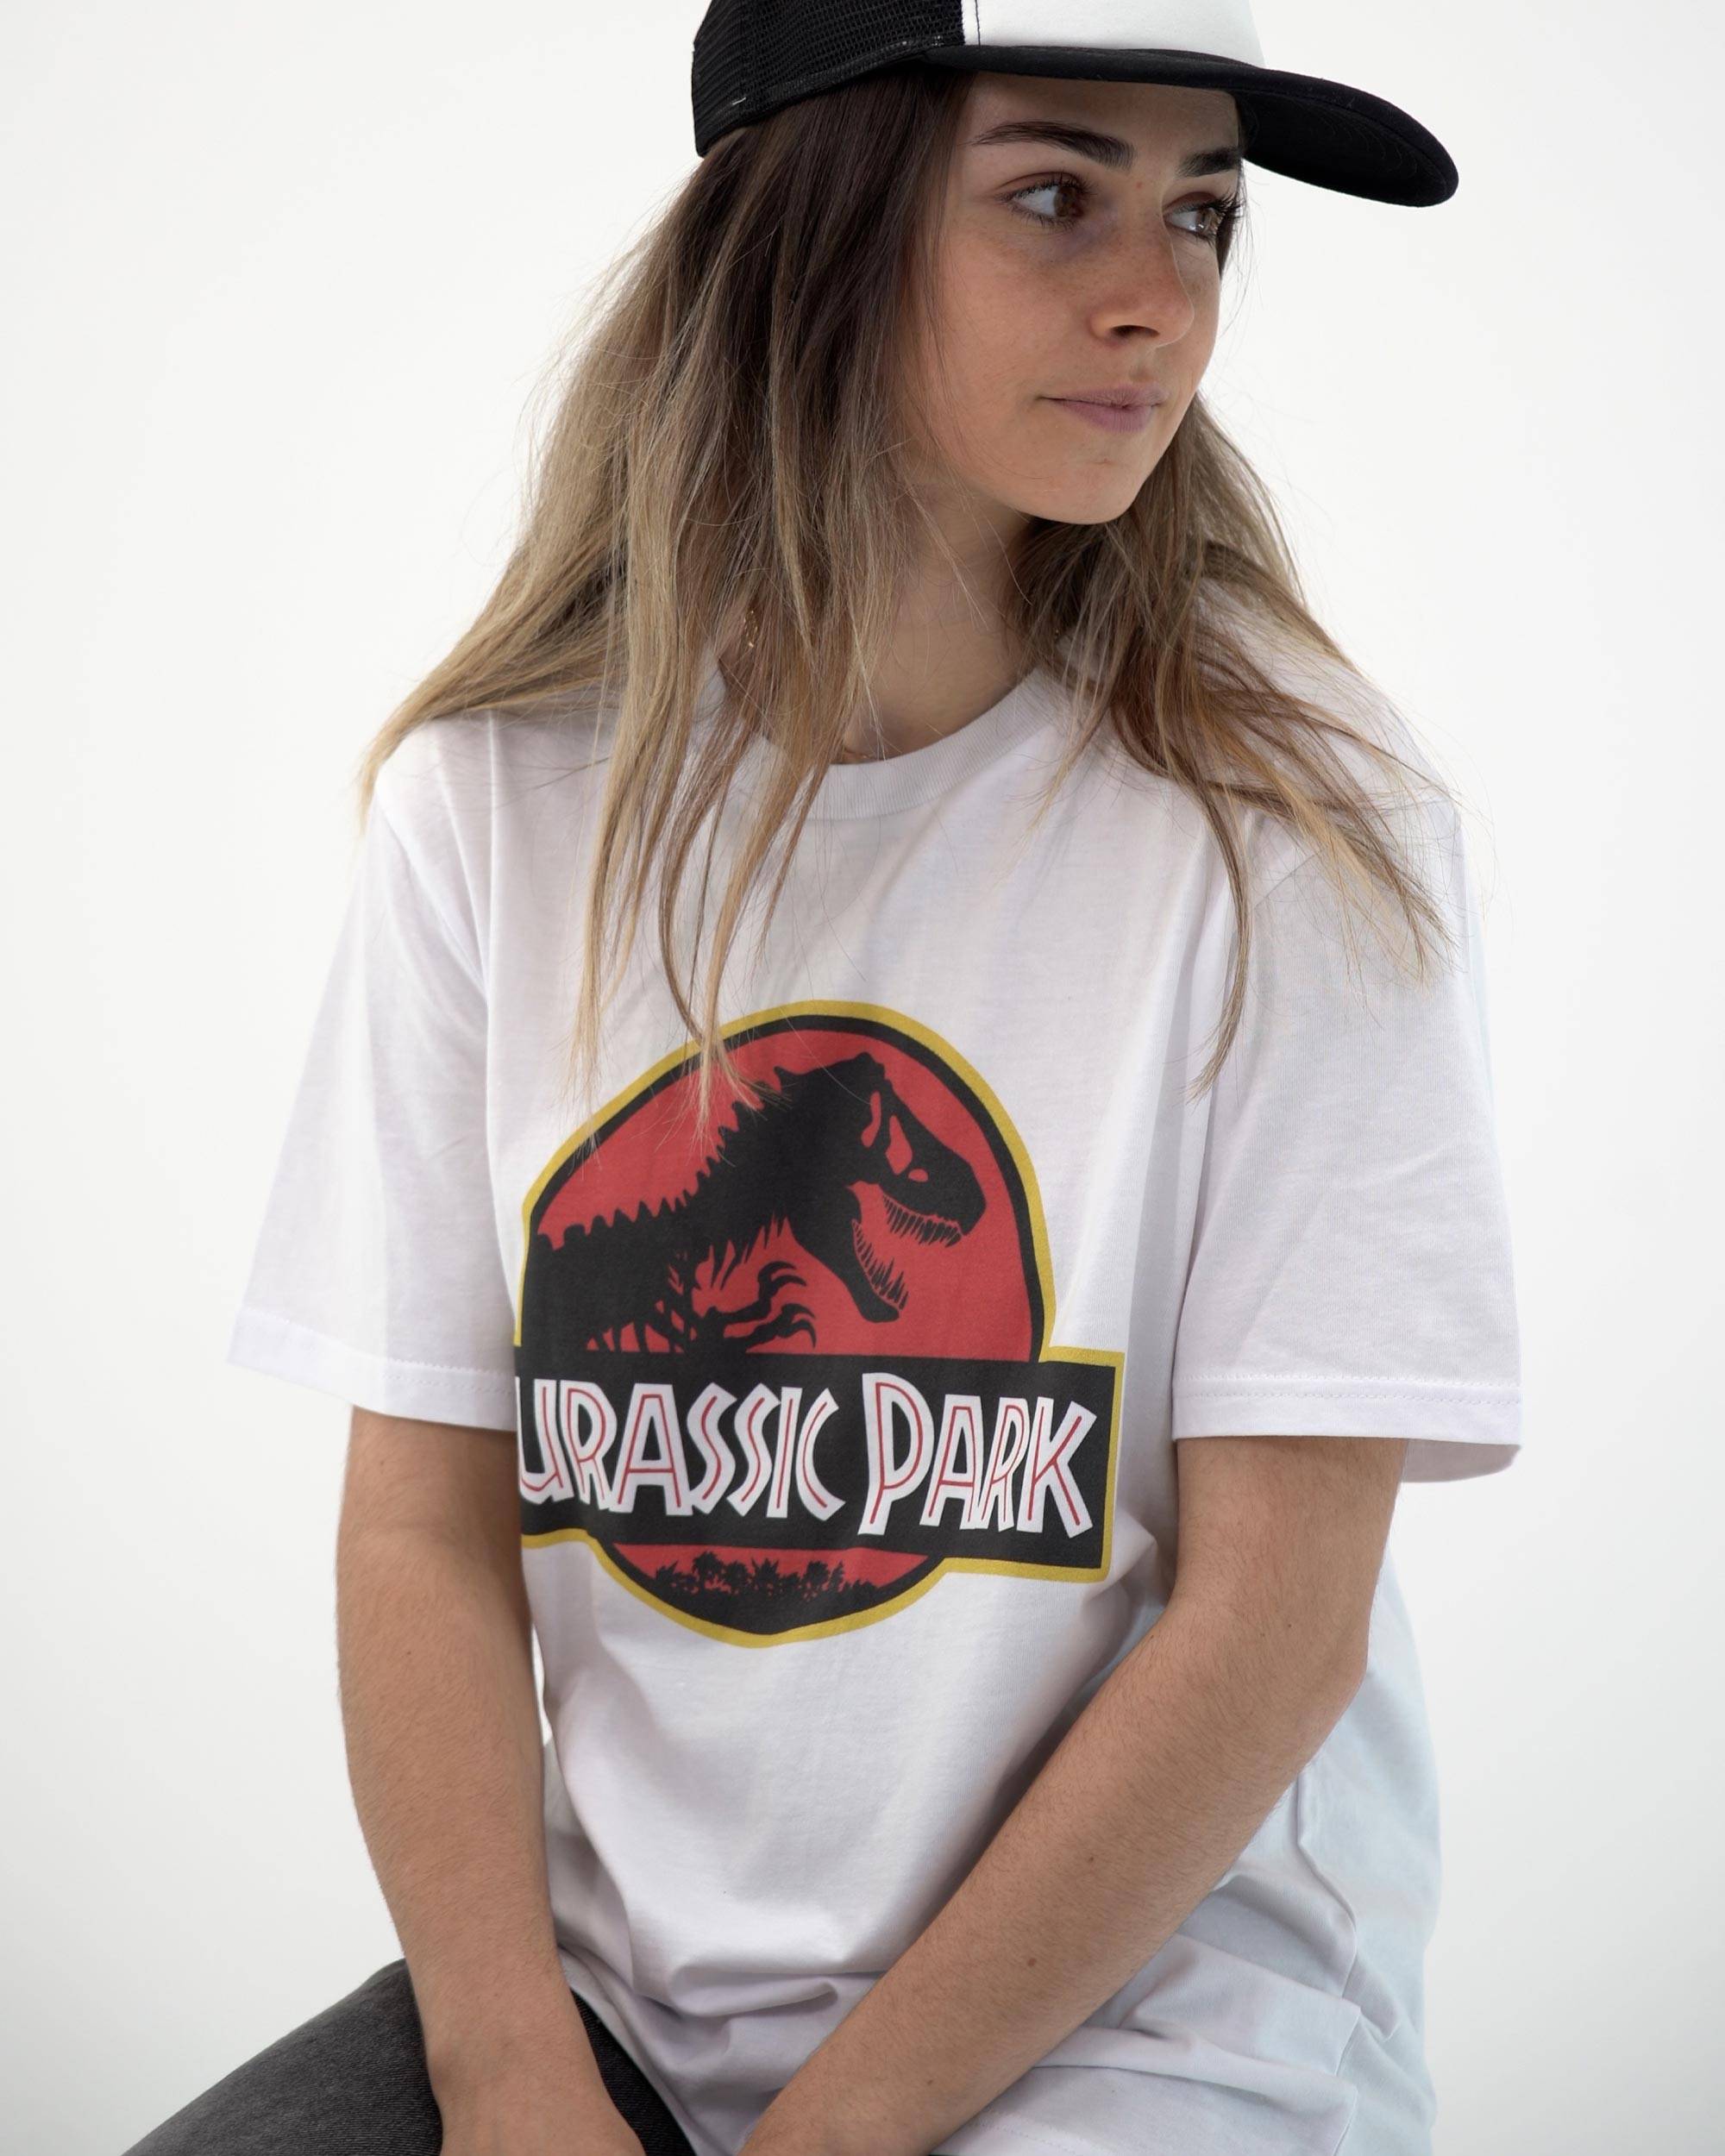 T-shirt Logo Jurassic Park Grafitee